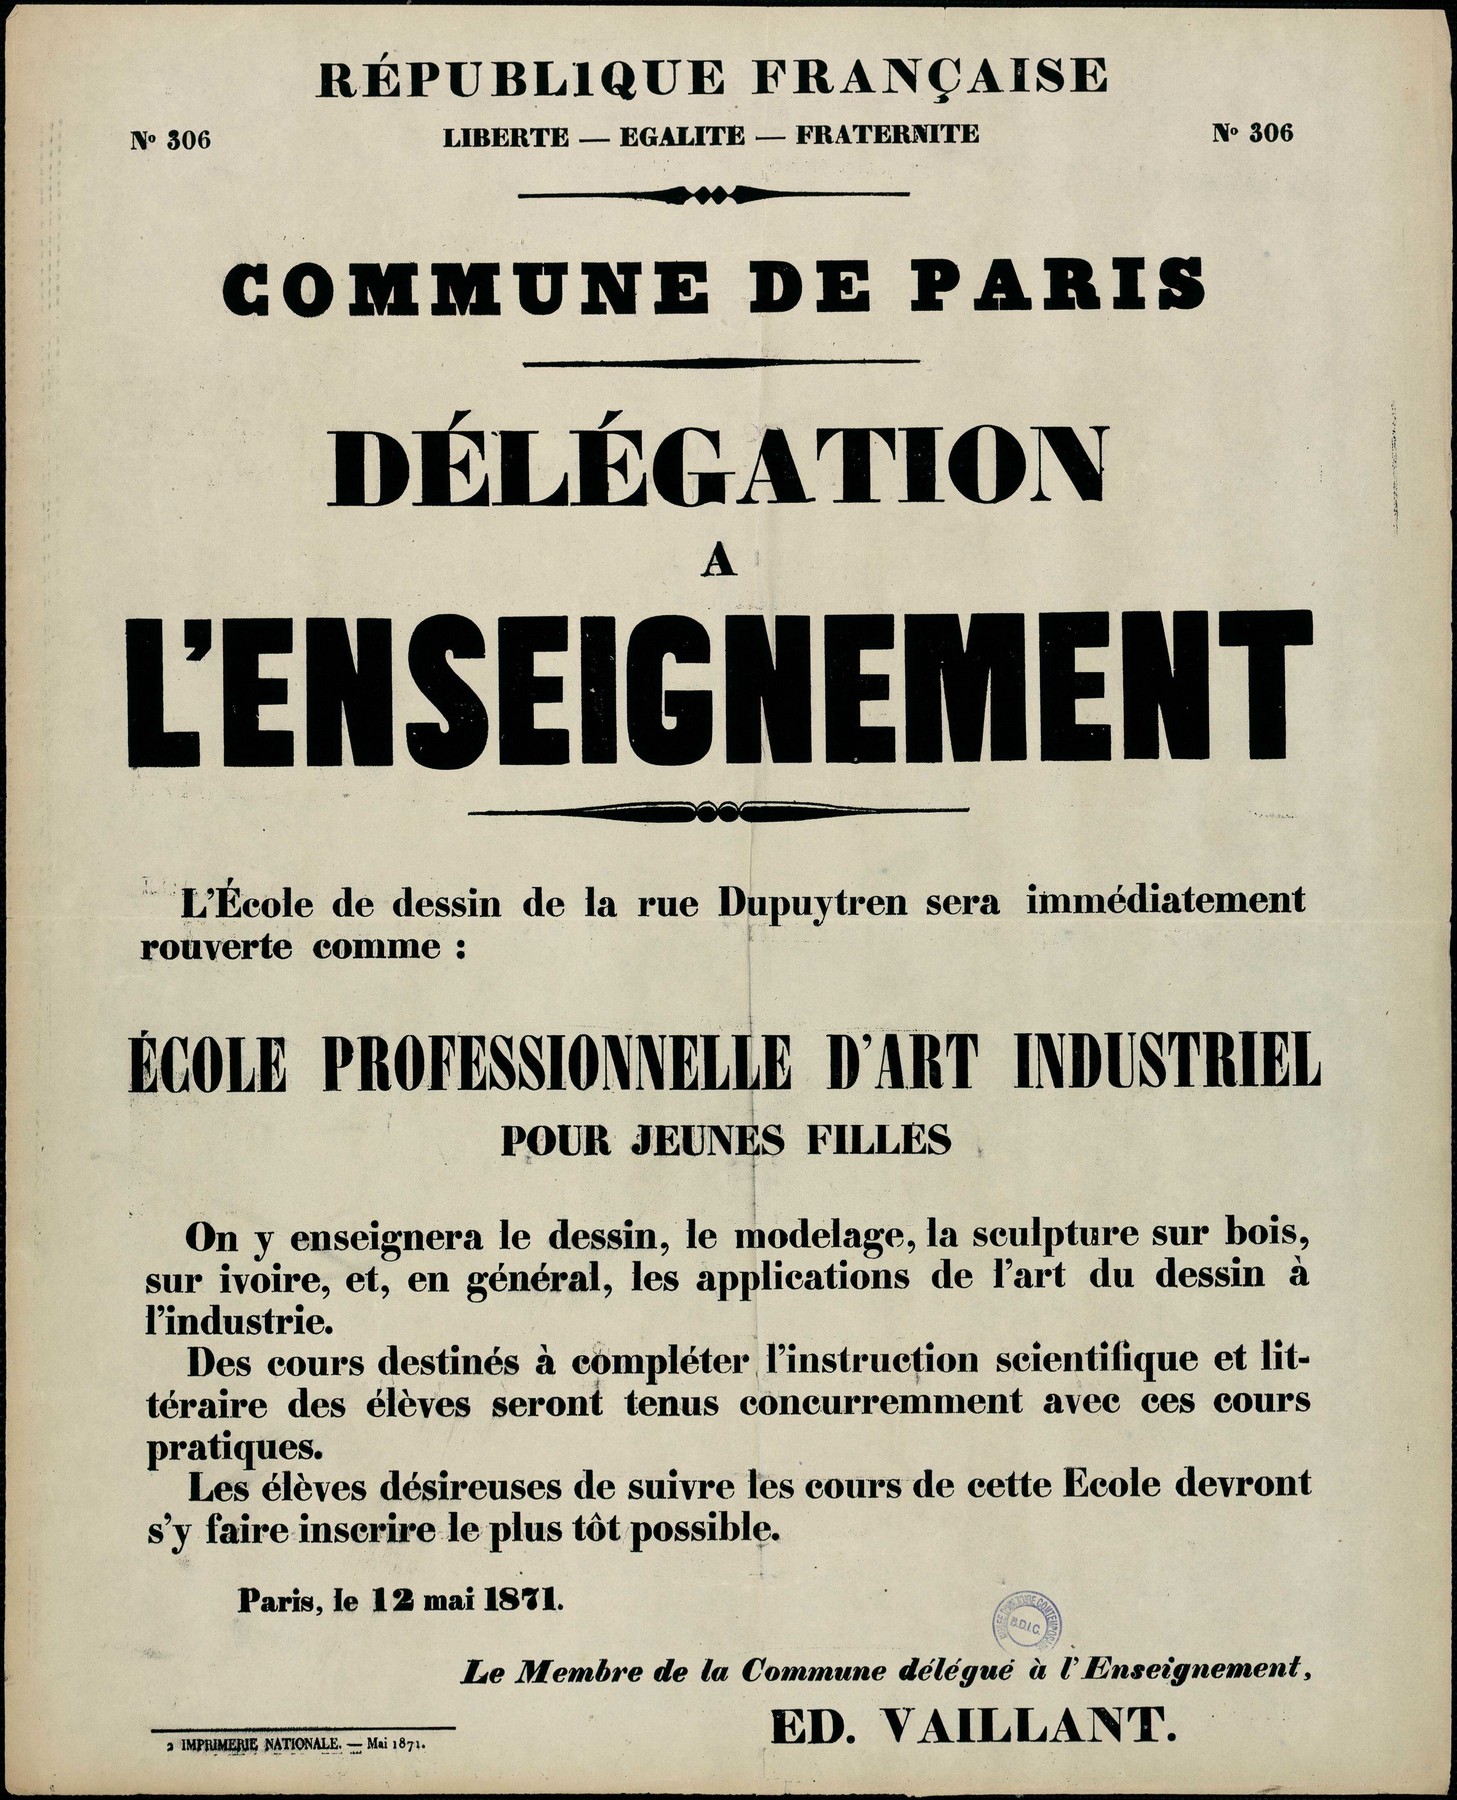 Affiche de la Xommune de Paris N° 306 du 12 mai 1871 - Création d'une école technique pour filles par Vaillant